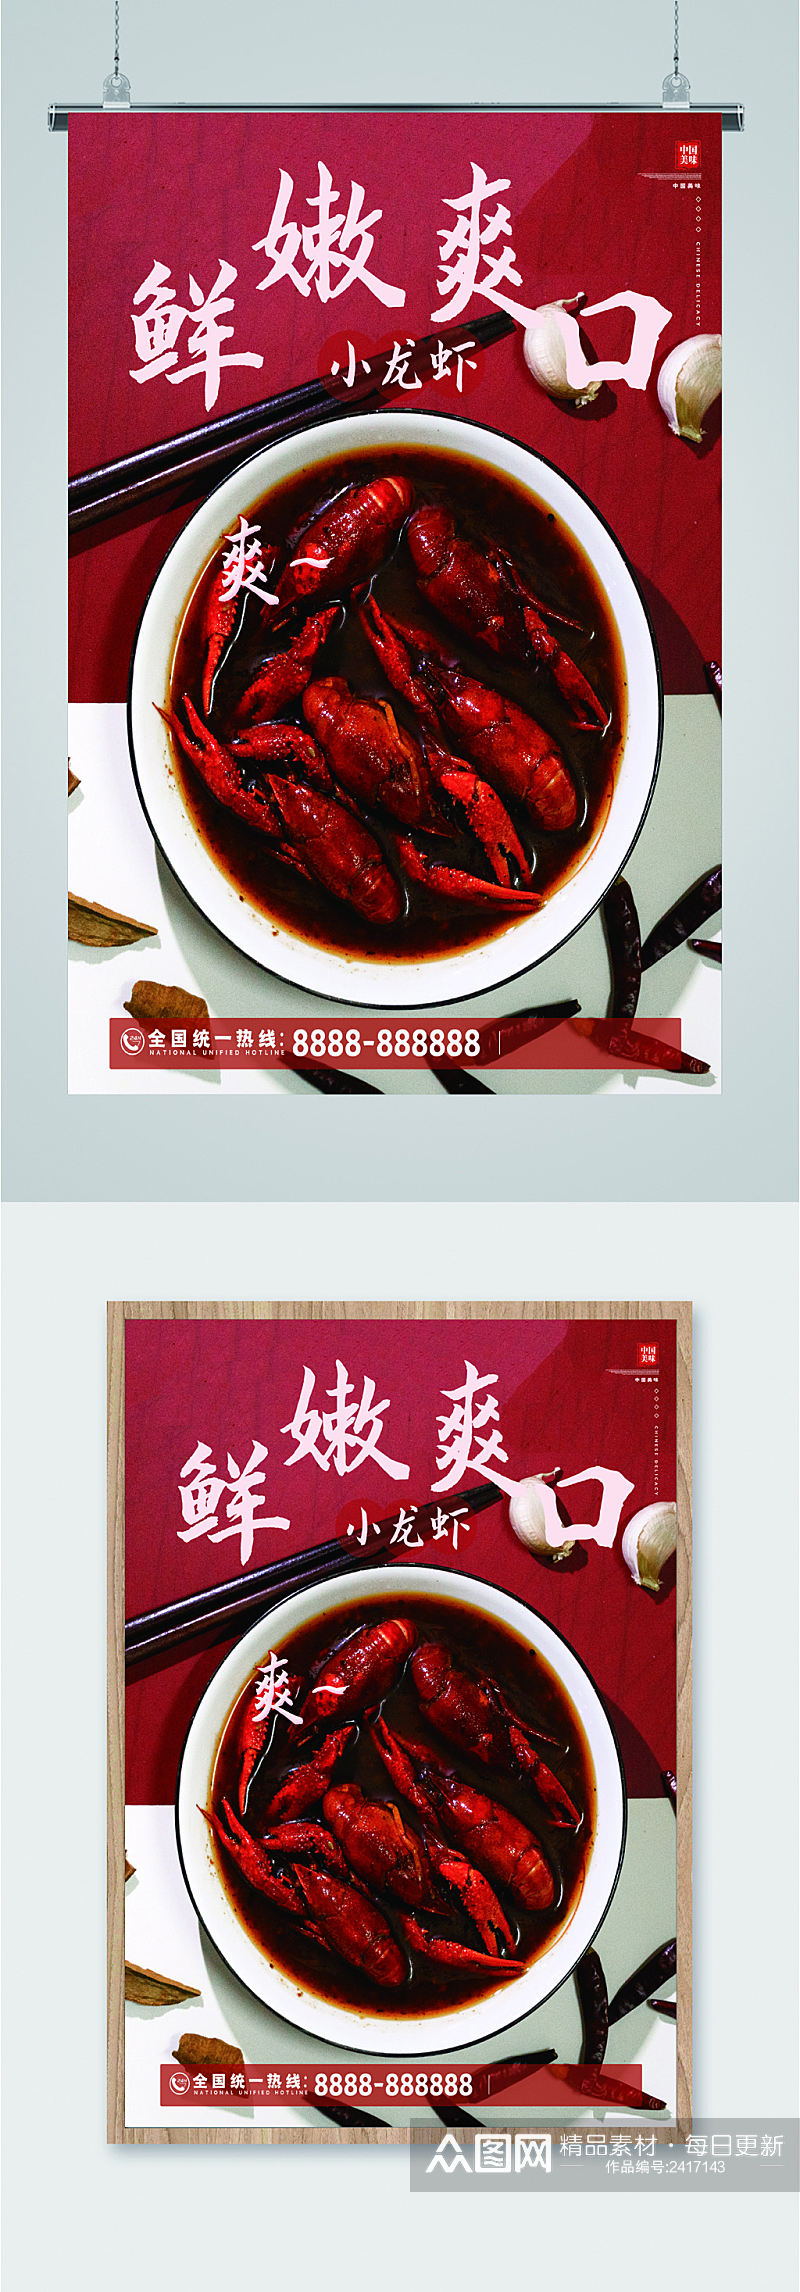 夏日小龙虾美食宣传海报素材